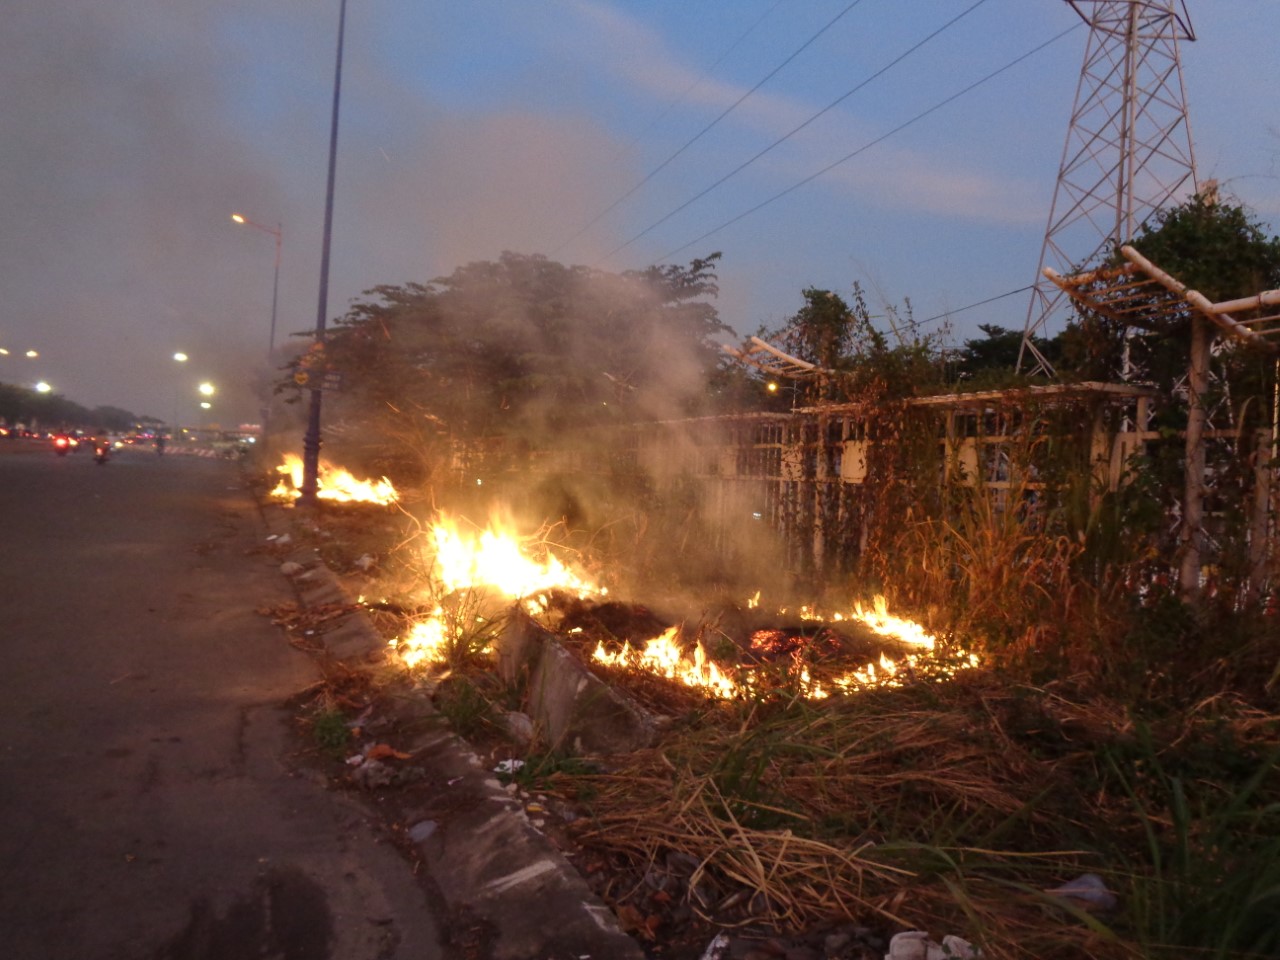 Nguy hiểm từ thói quen đốt cỏ rác bừa bãi - Báo Người lao động